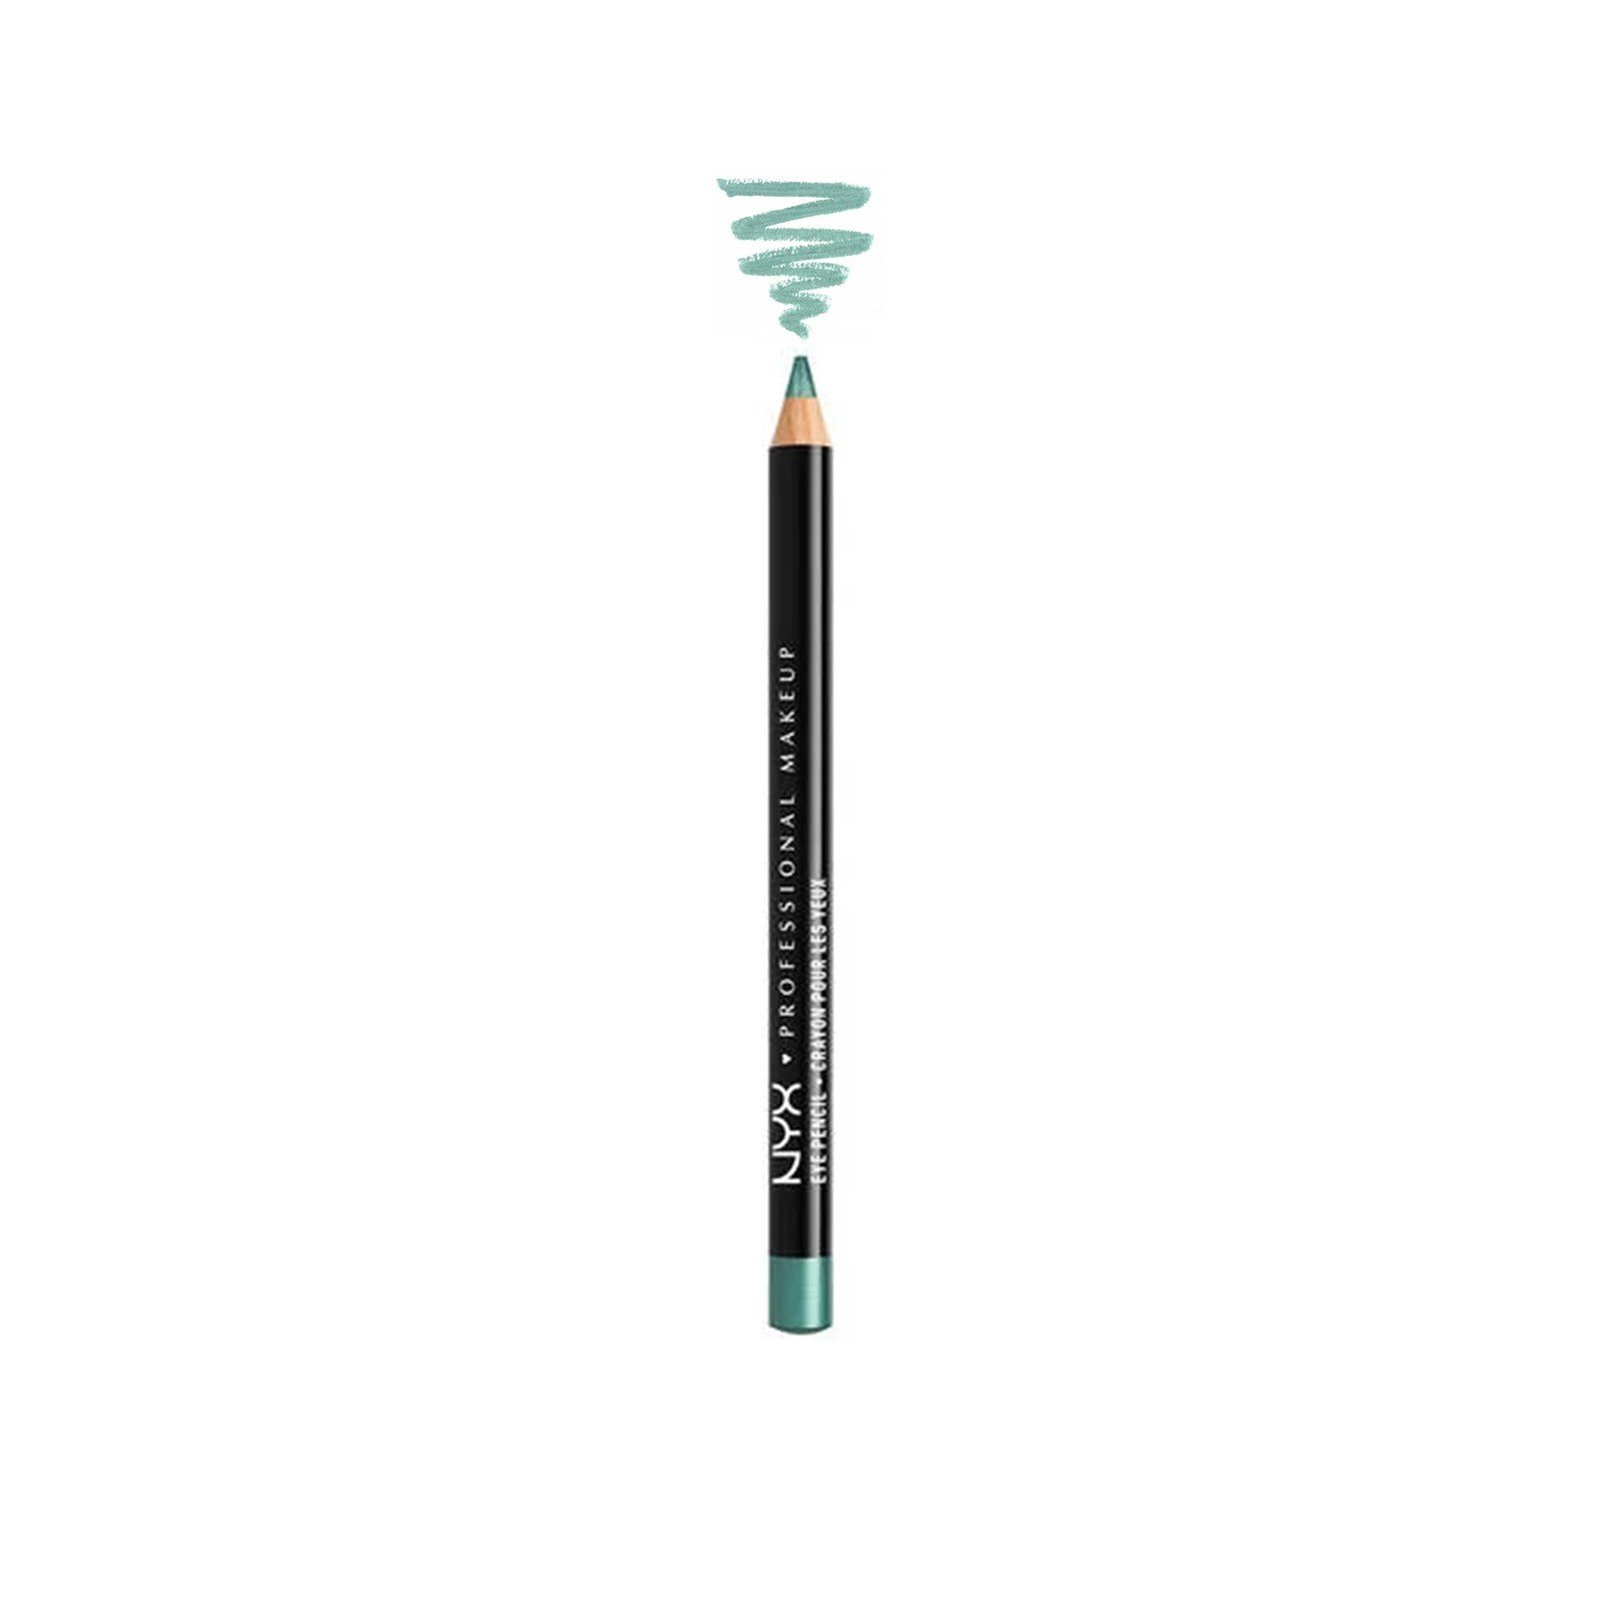 NYX Pro Makeup Slim Eye Pencil Seafoam Green 1.1g (0.03oz)